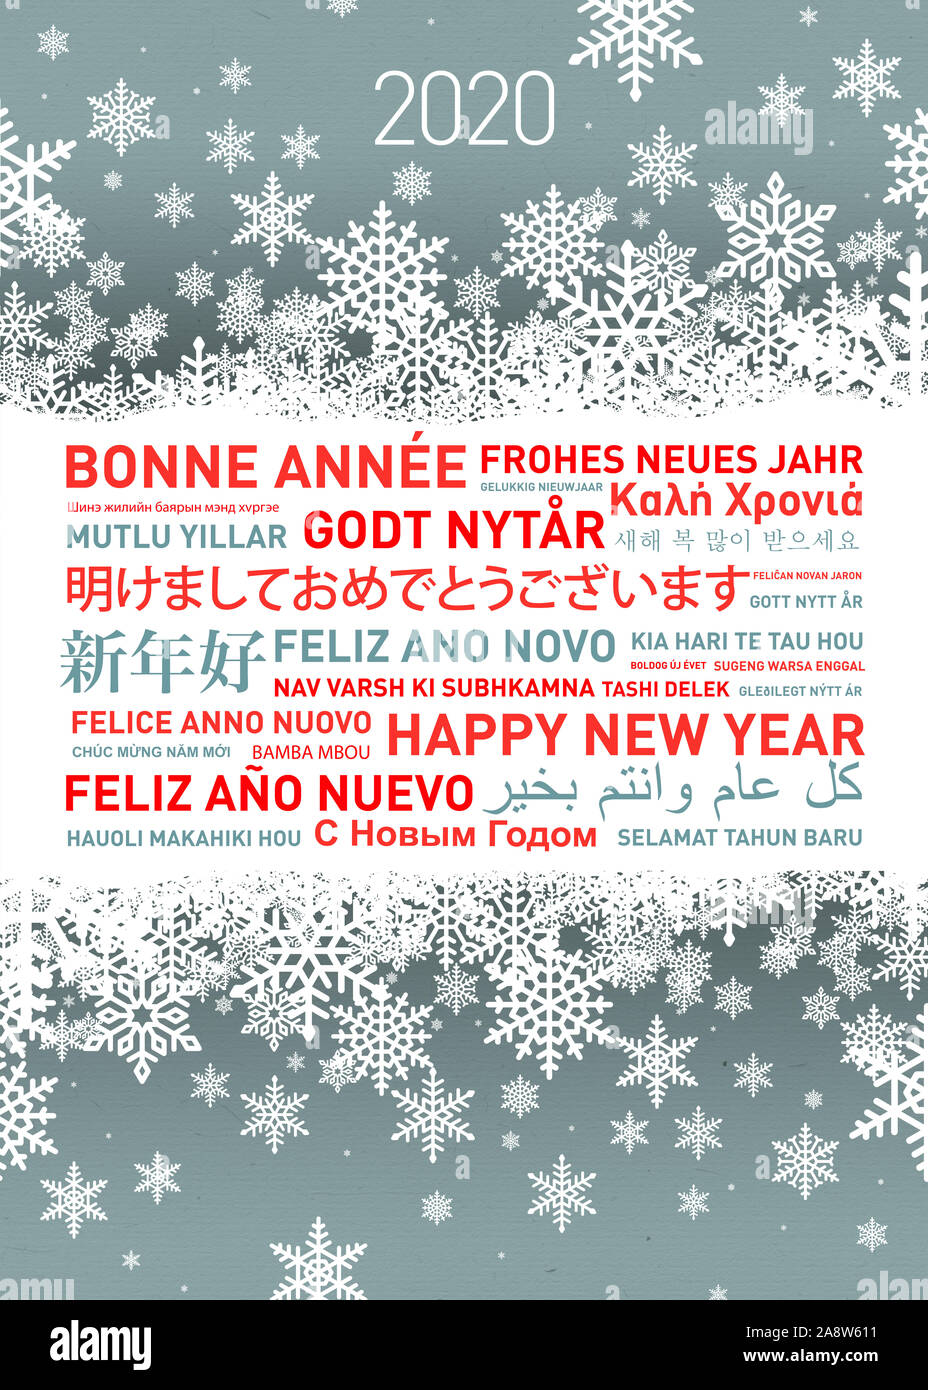 Bonne année carte de voeux dans différentes langues Banque D'Images